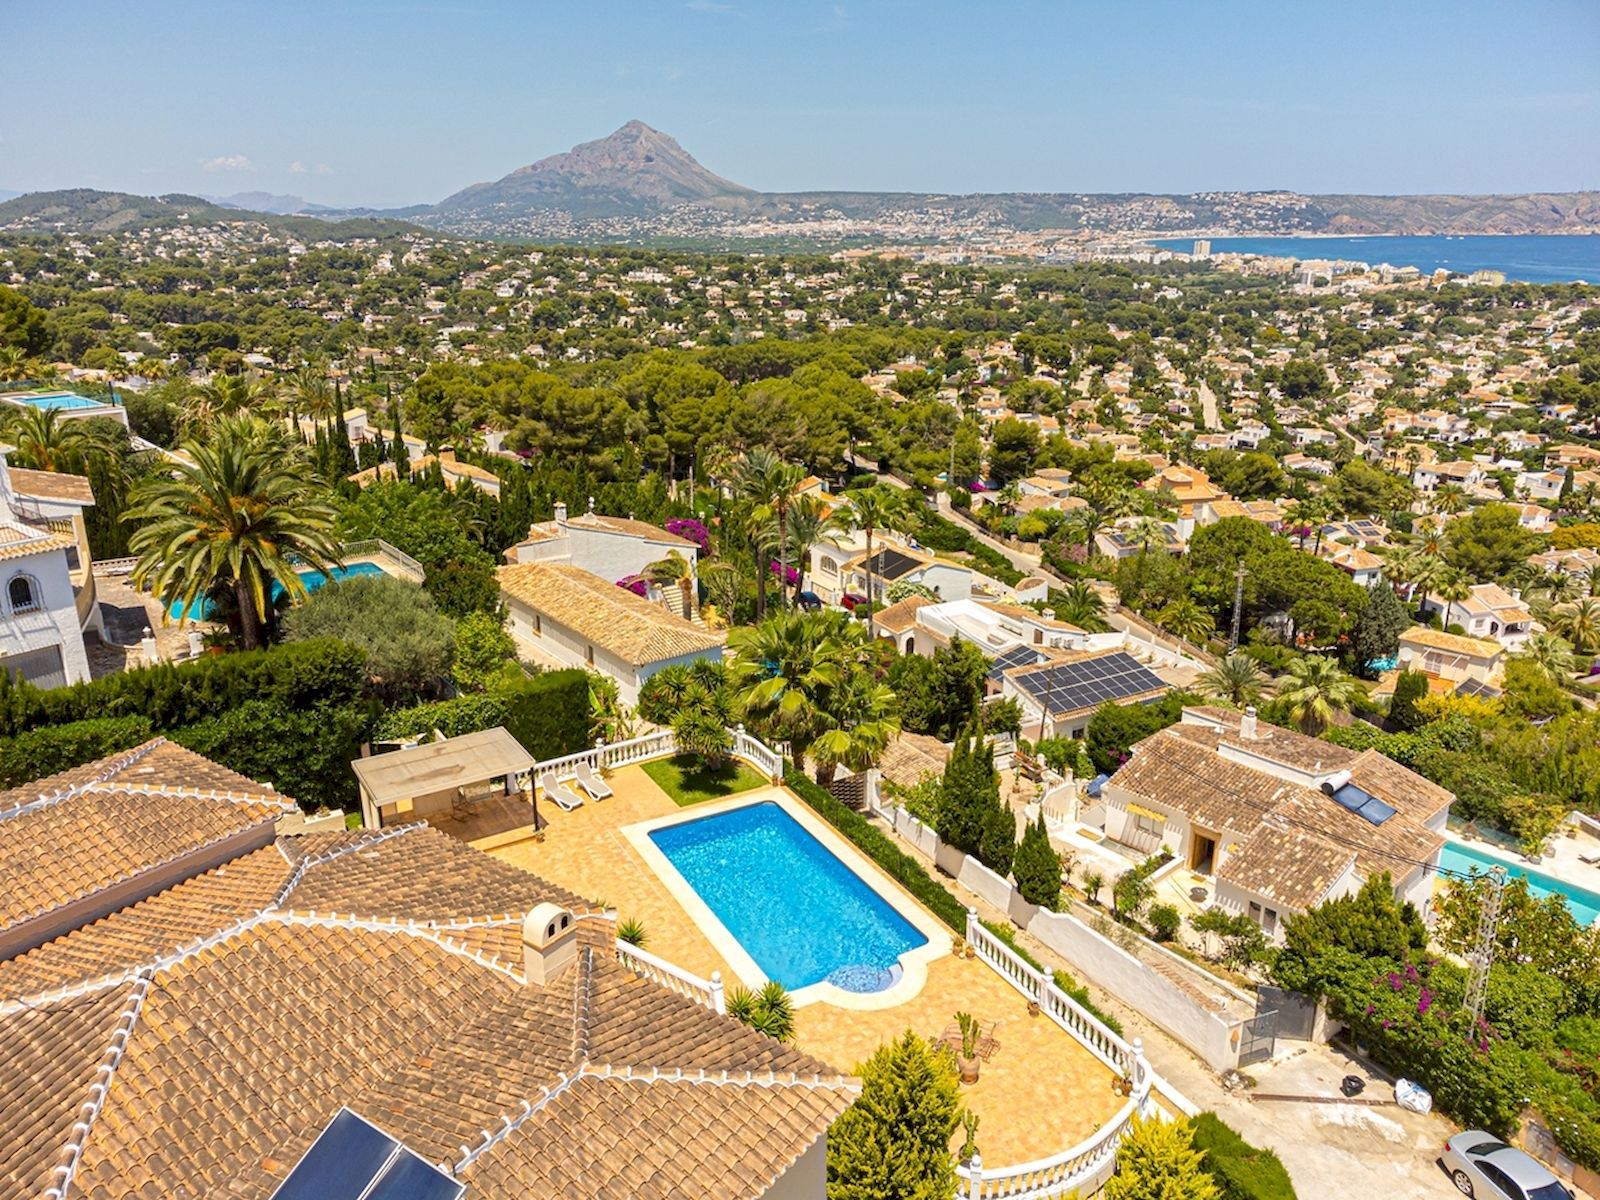 Fantastische villa te koop met uitzicht op zee in Javea - Atalayas